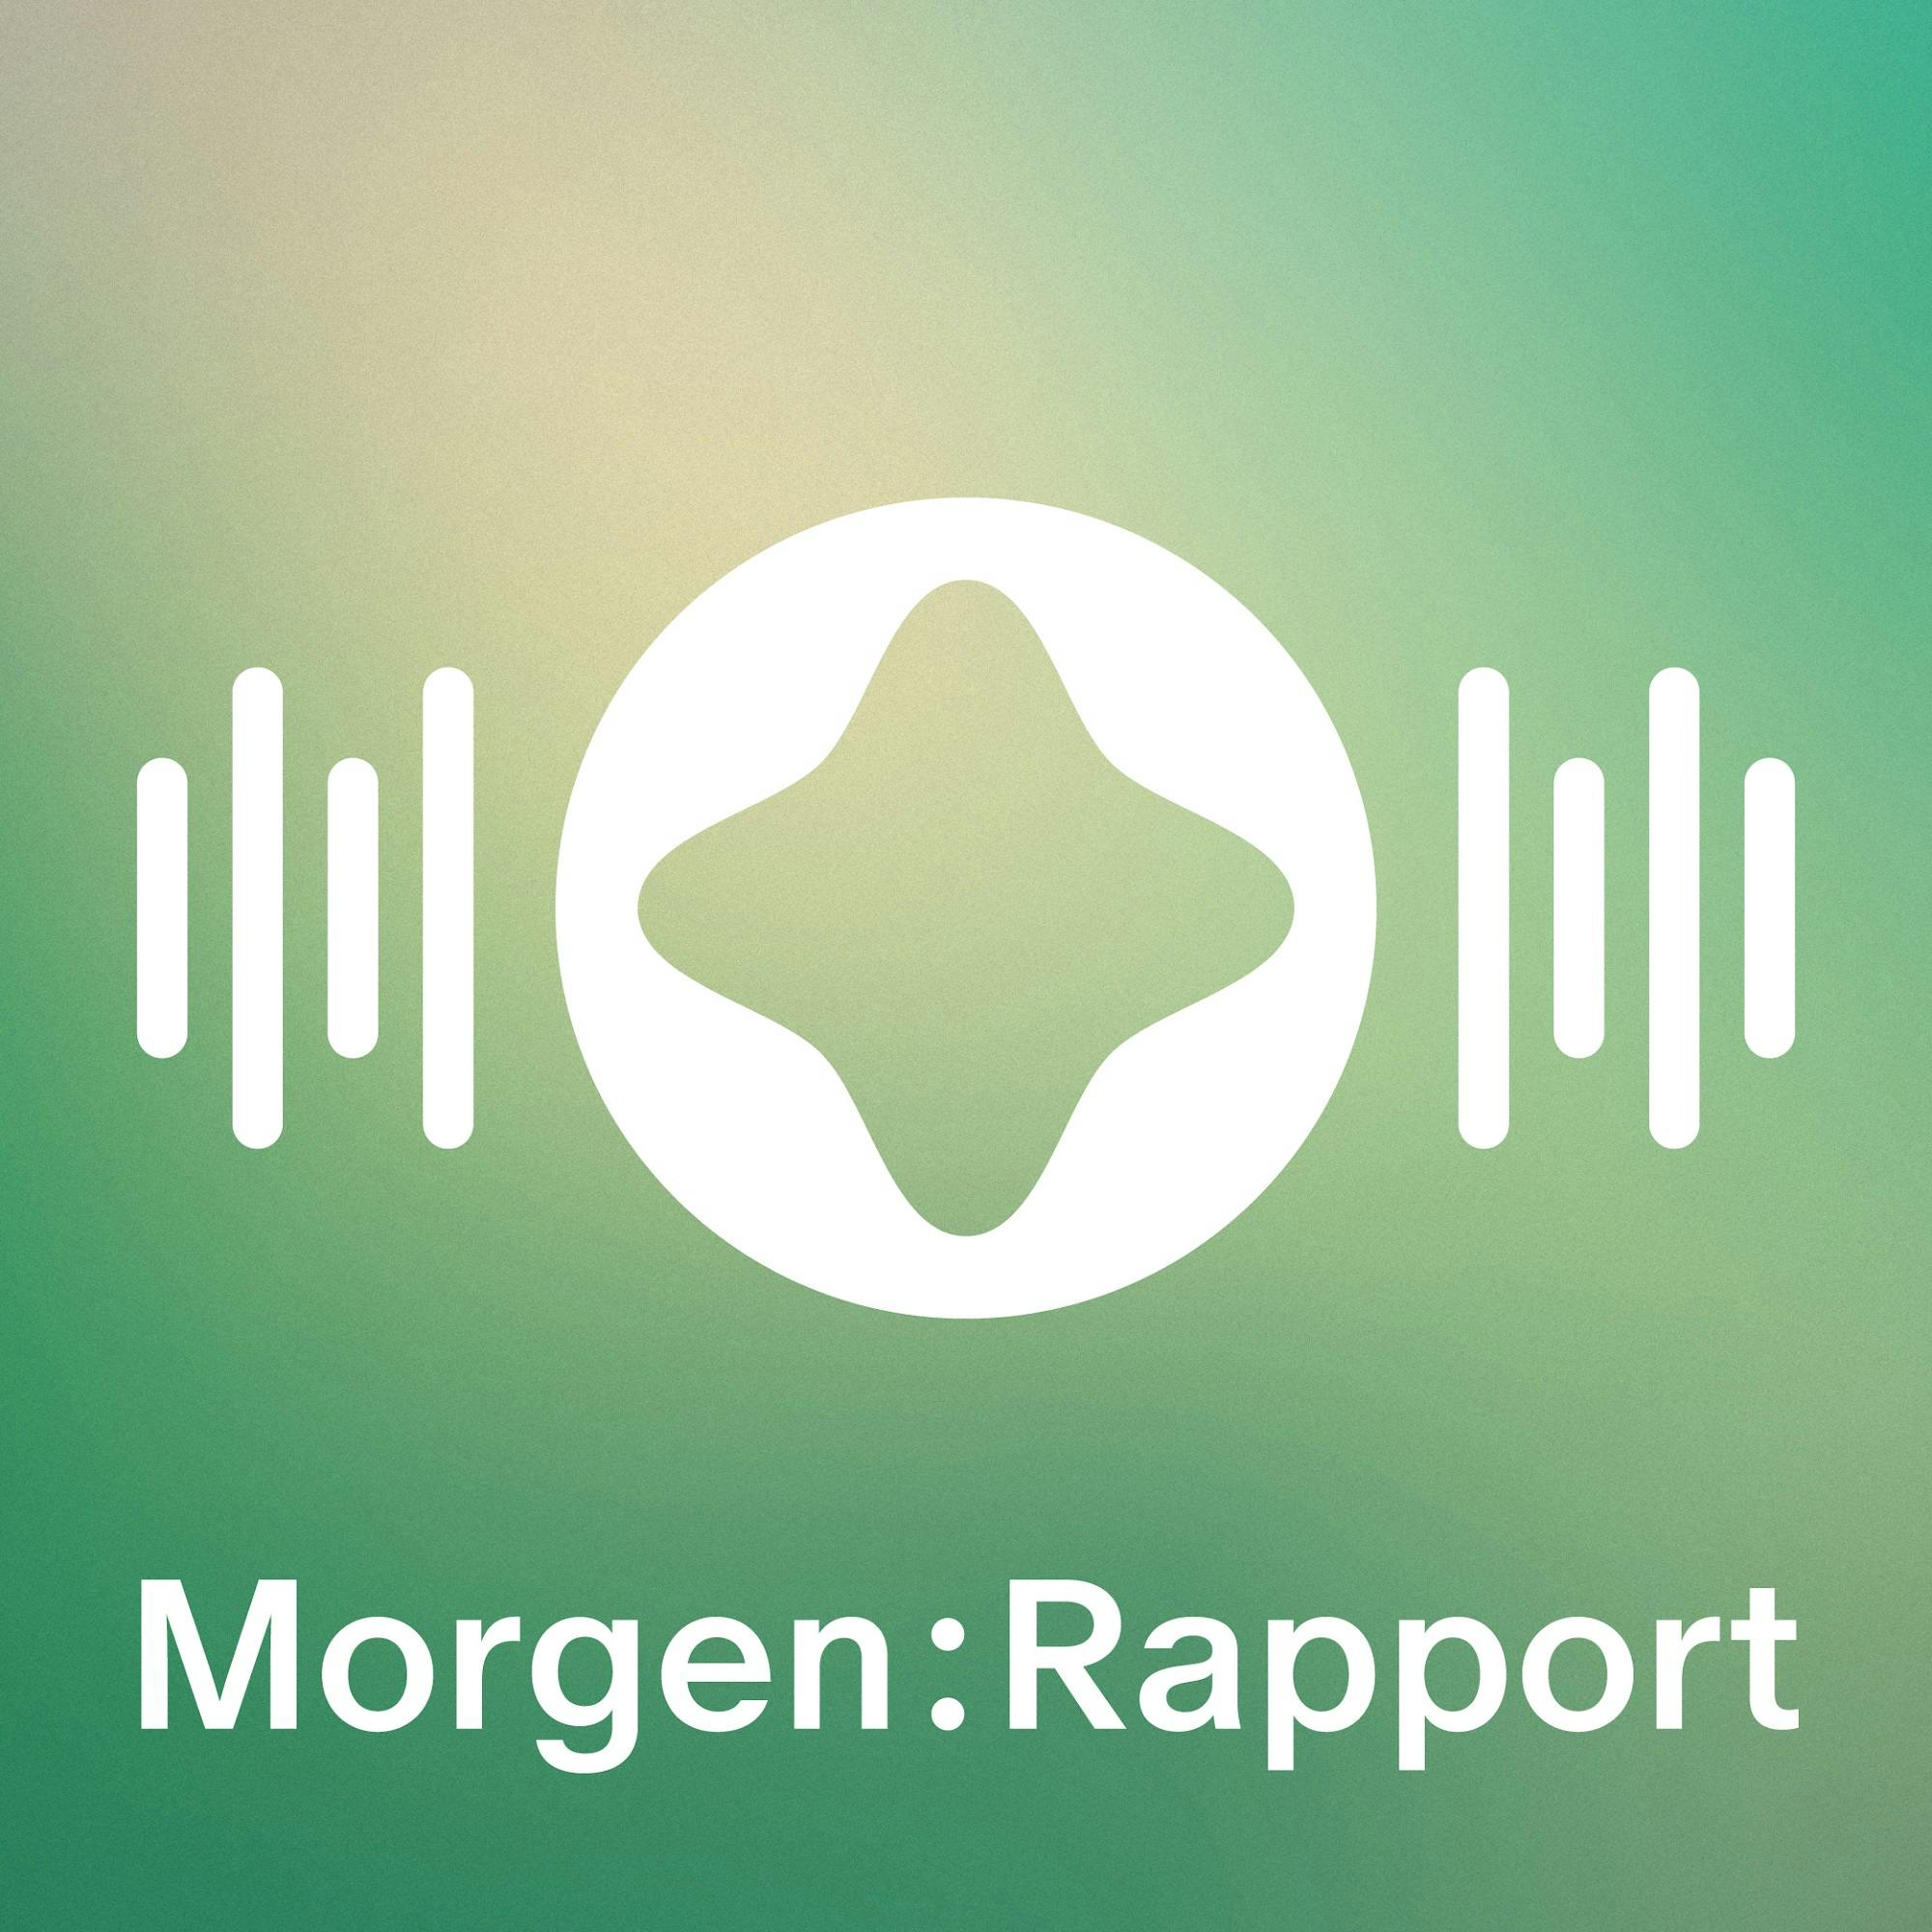 Podcast-Logo "Morgen:Rapport" mit abstraktem Symbol und Audio-Wellen auf grünem Verlaufshintergrund.